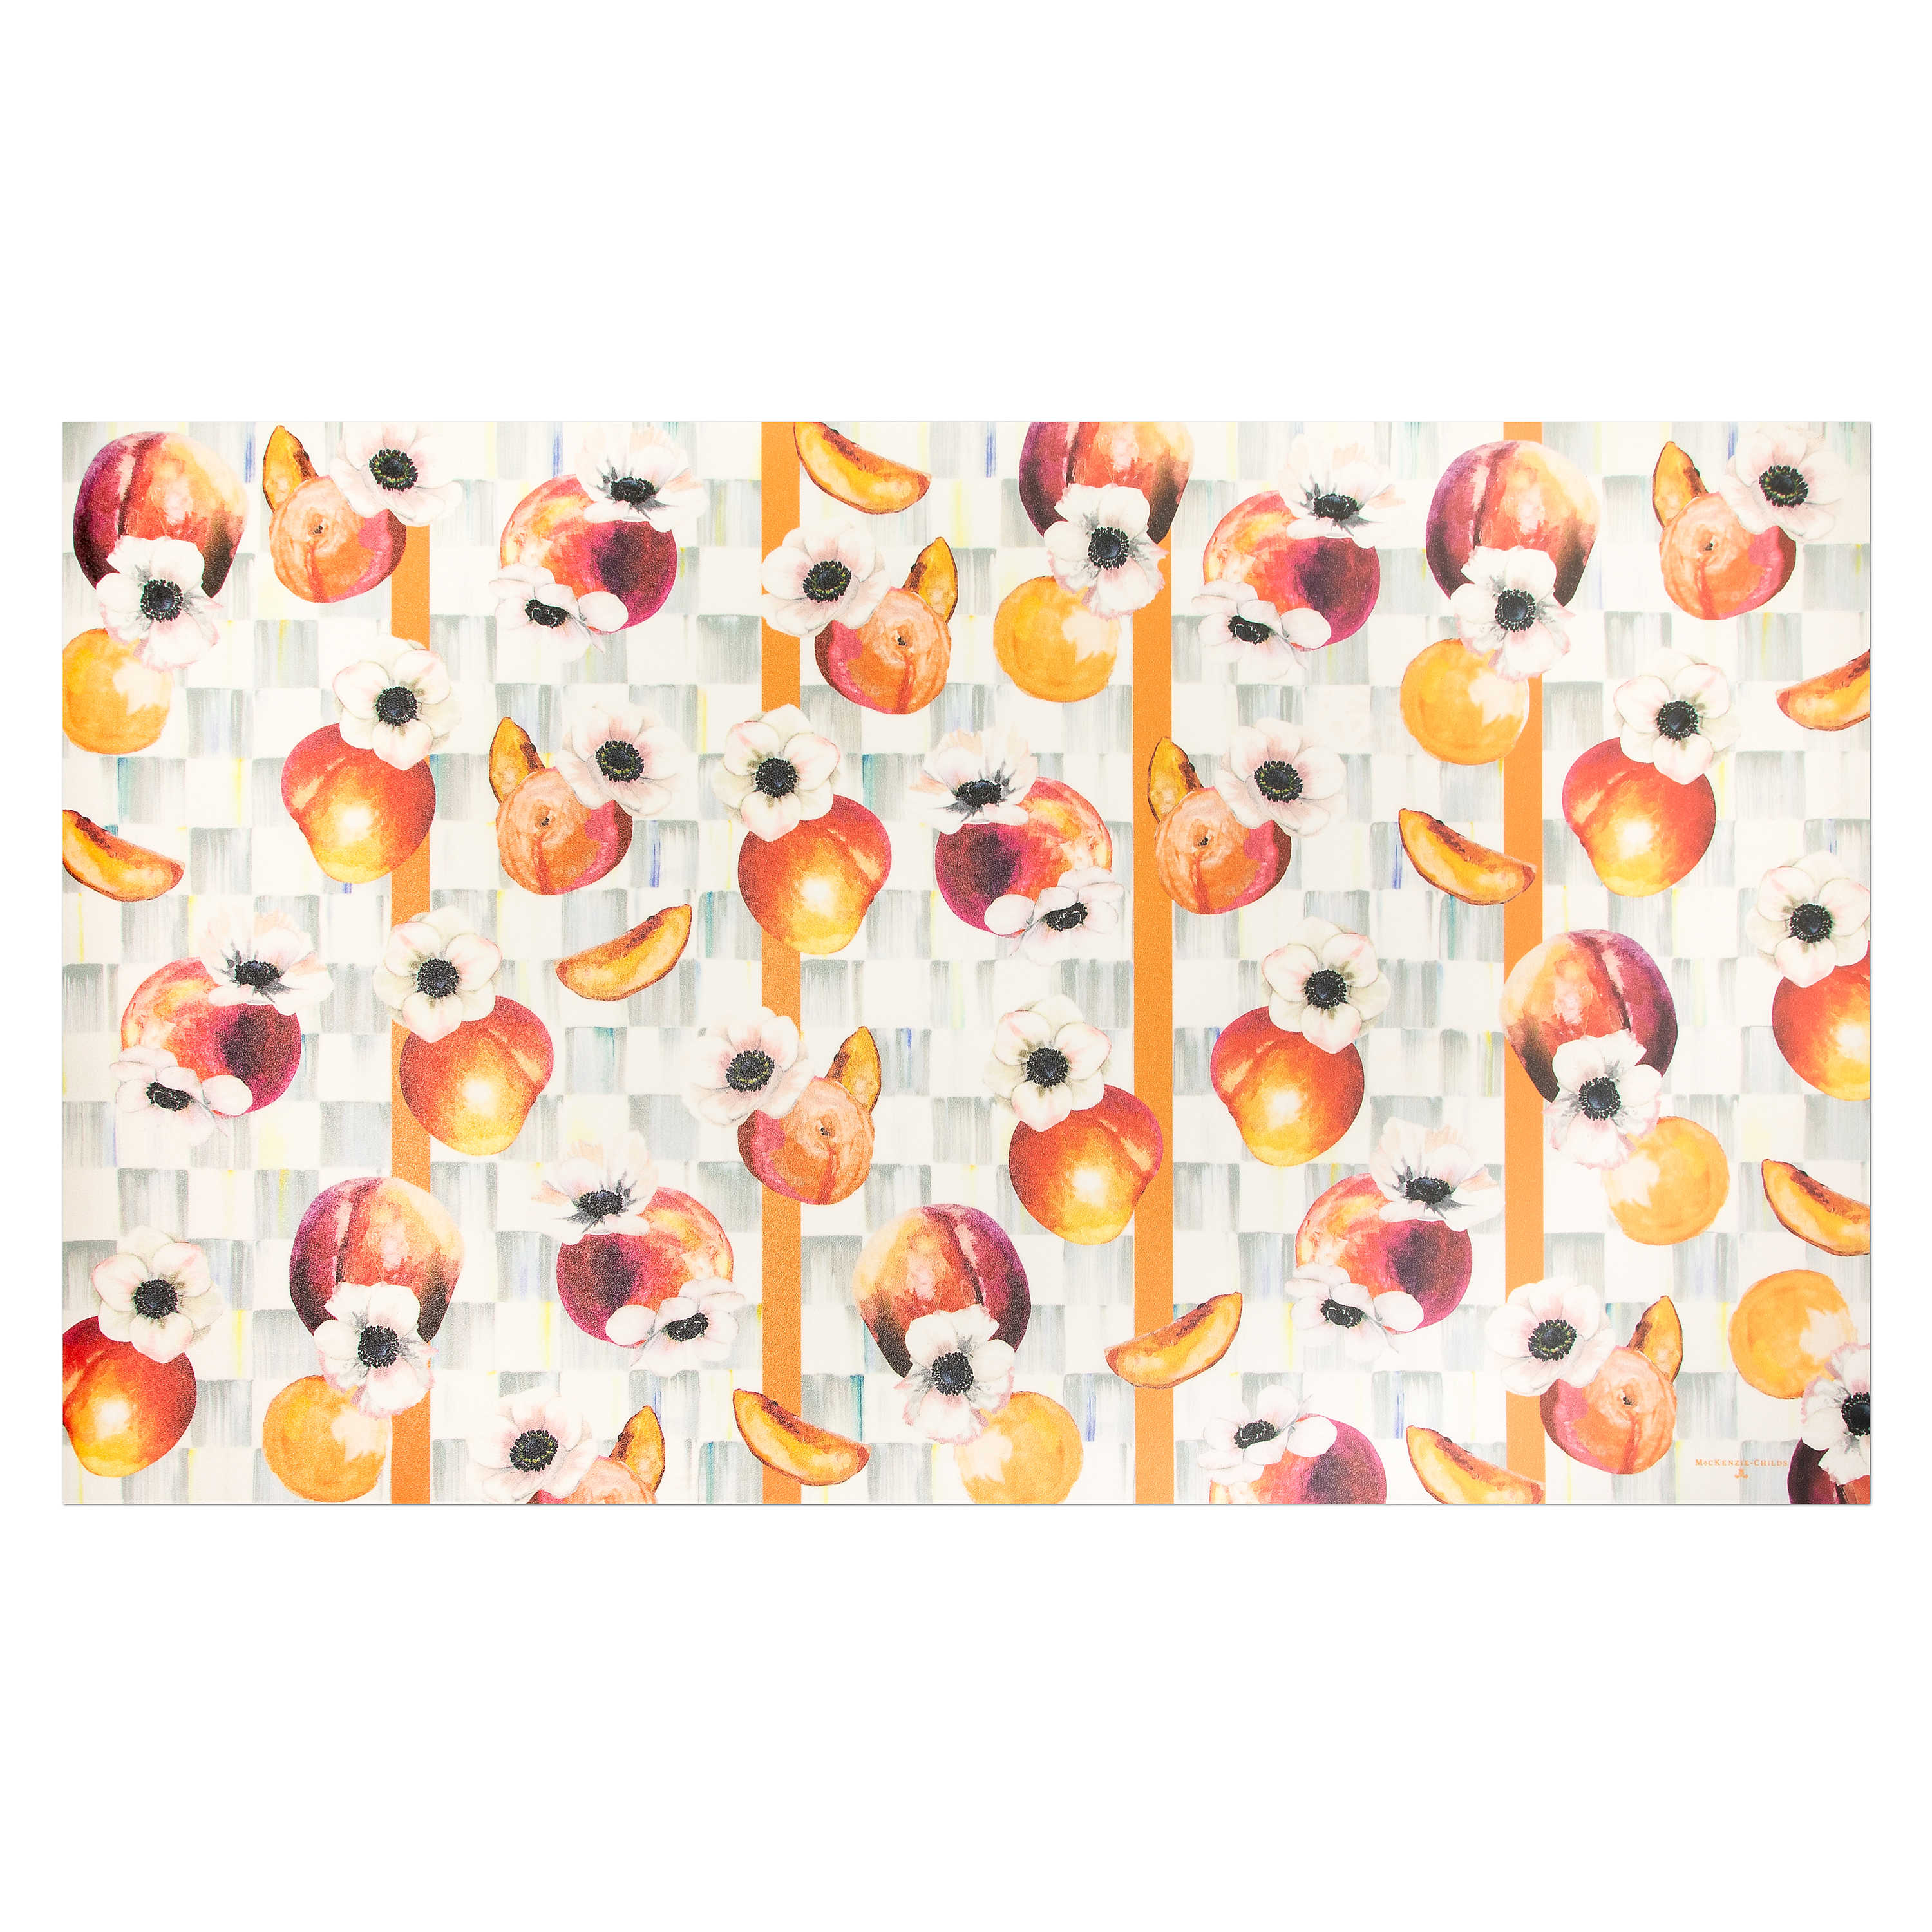 Peaches & Anemones Floor Mat - 3%27 x 5%27 mackenzie-childs Panama 0